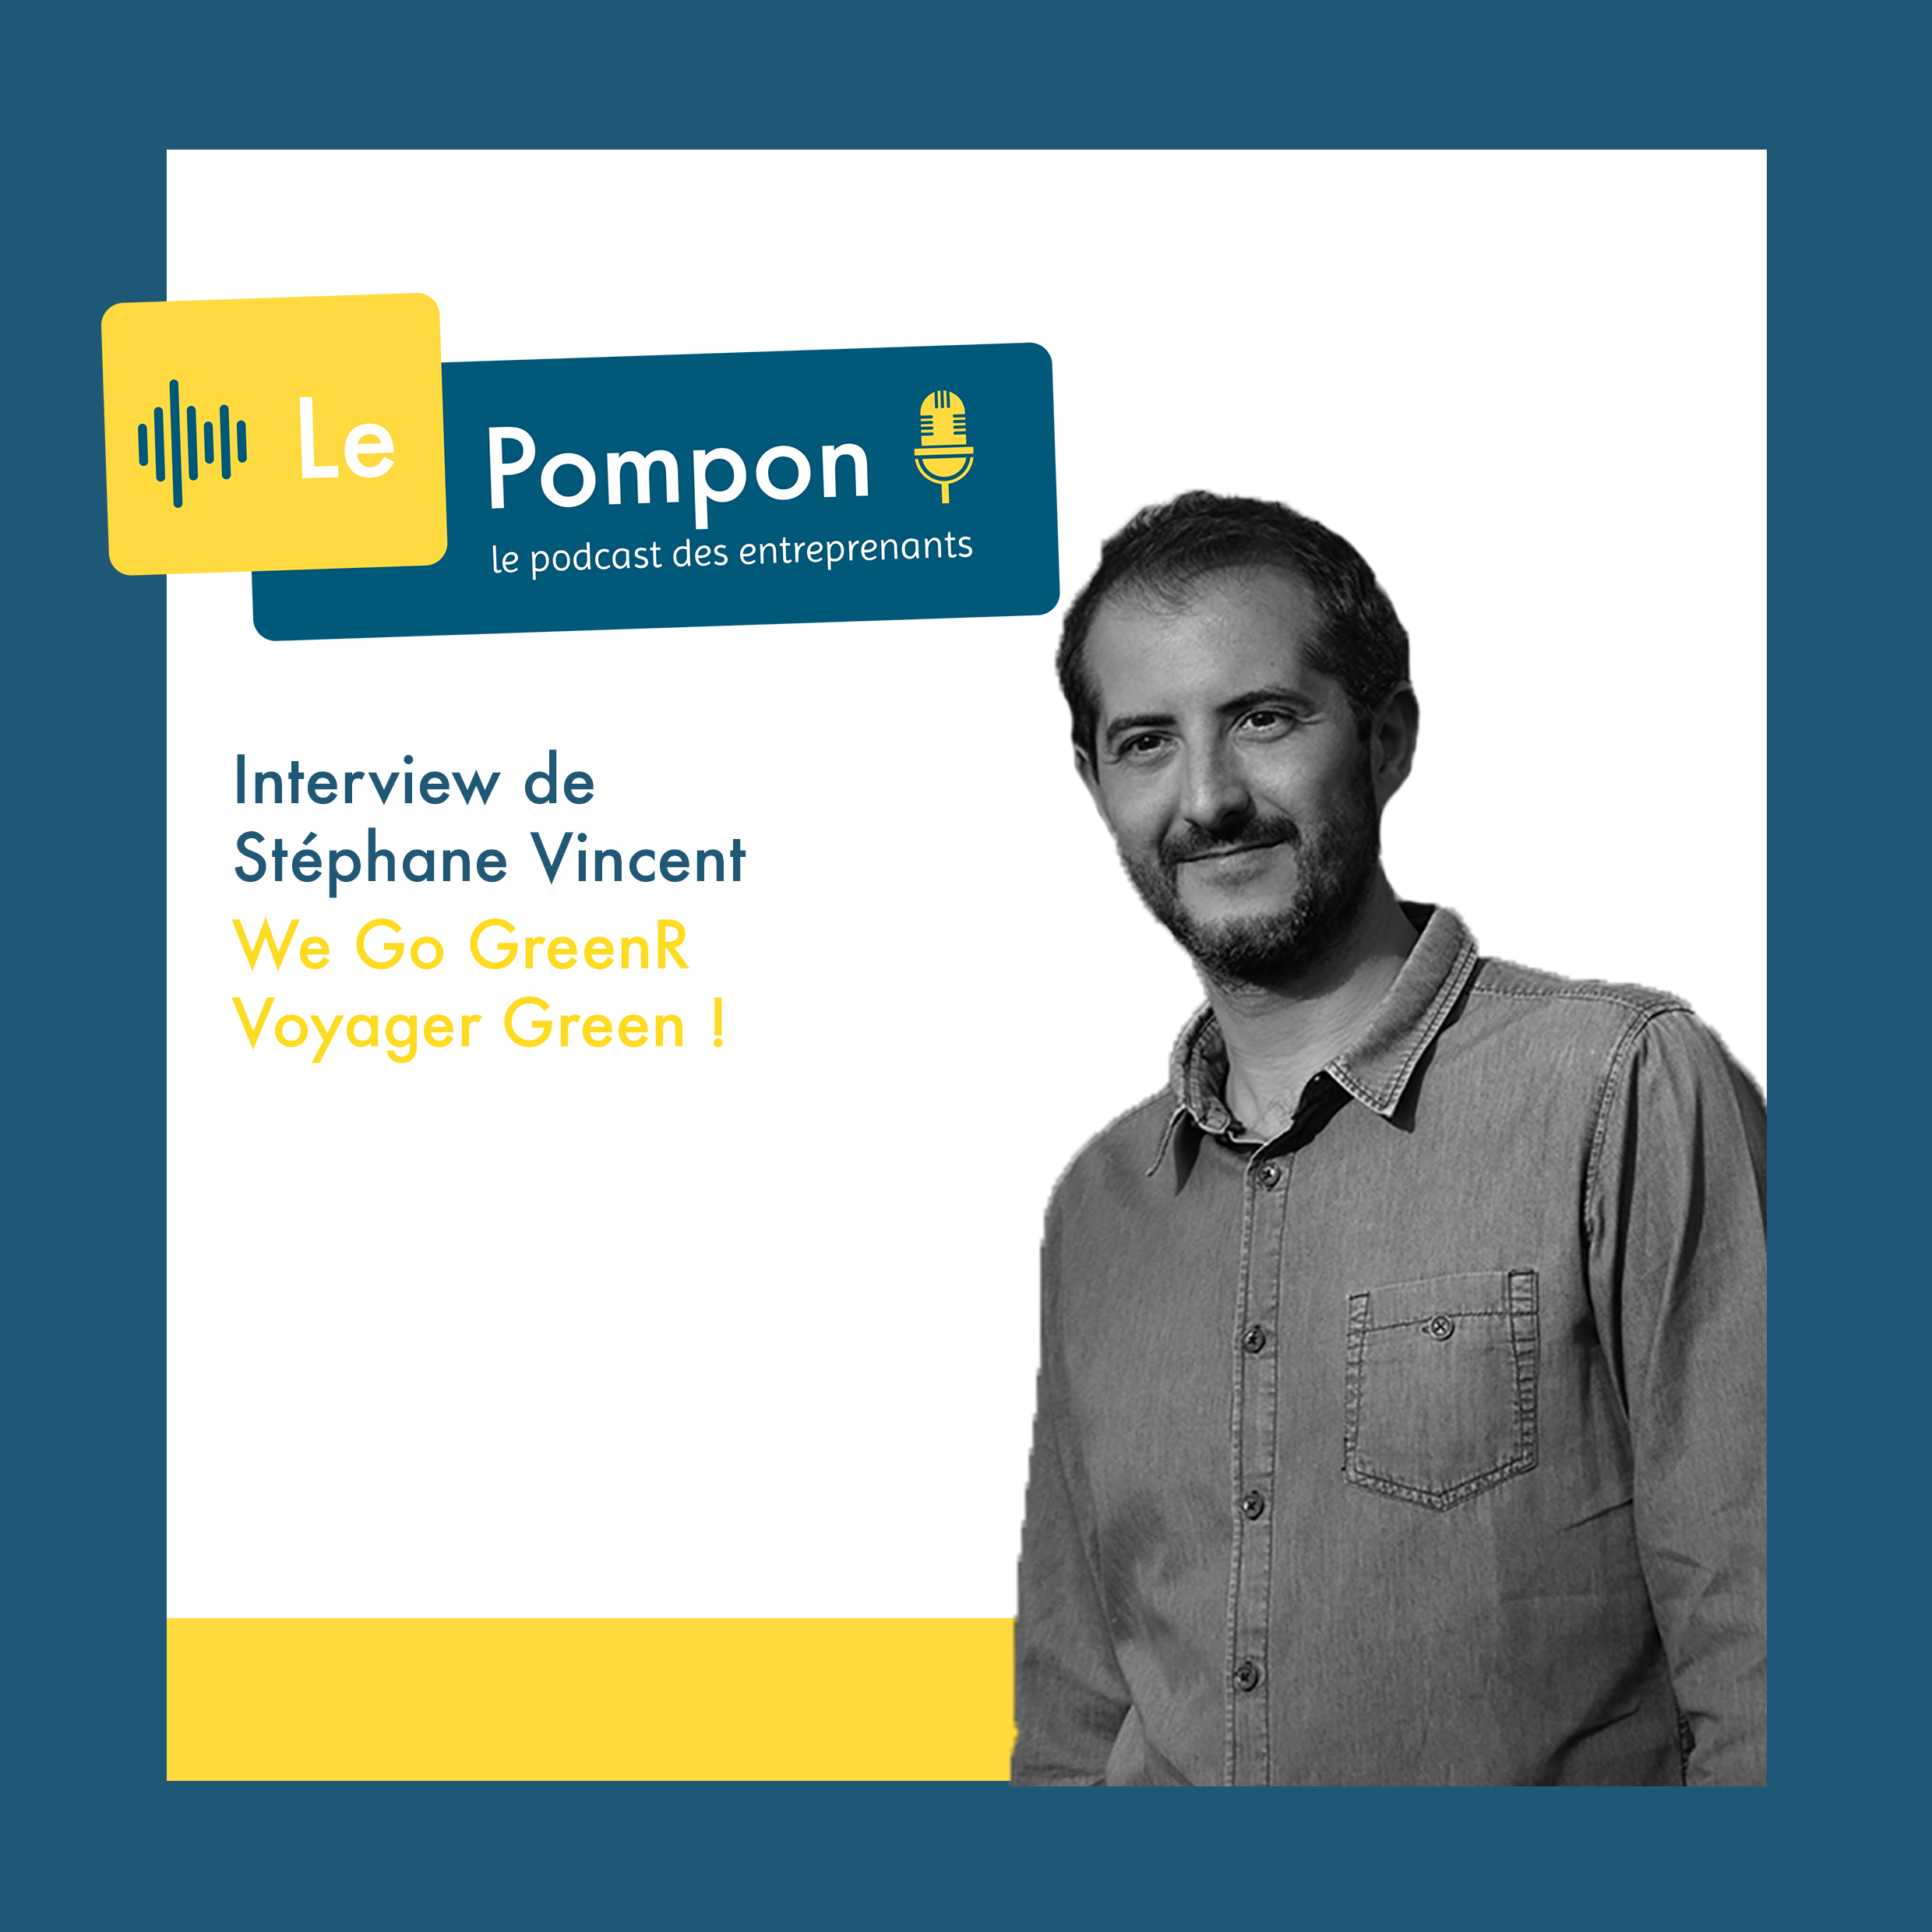 Illustration de l'épisode 62 du Podcast Le Pompon : Stéphane Vincent, We Go GreenR